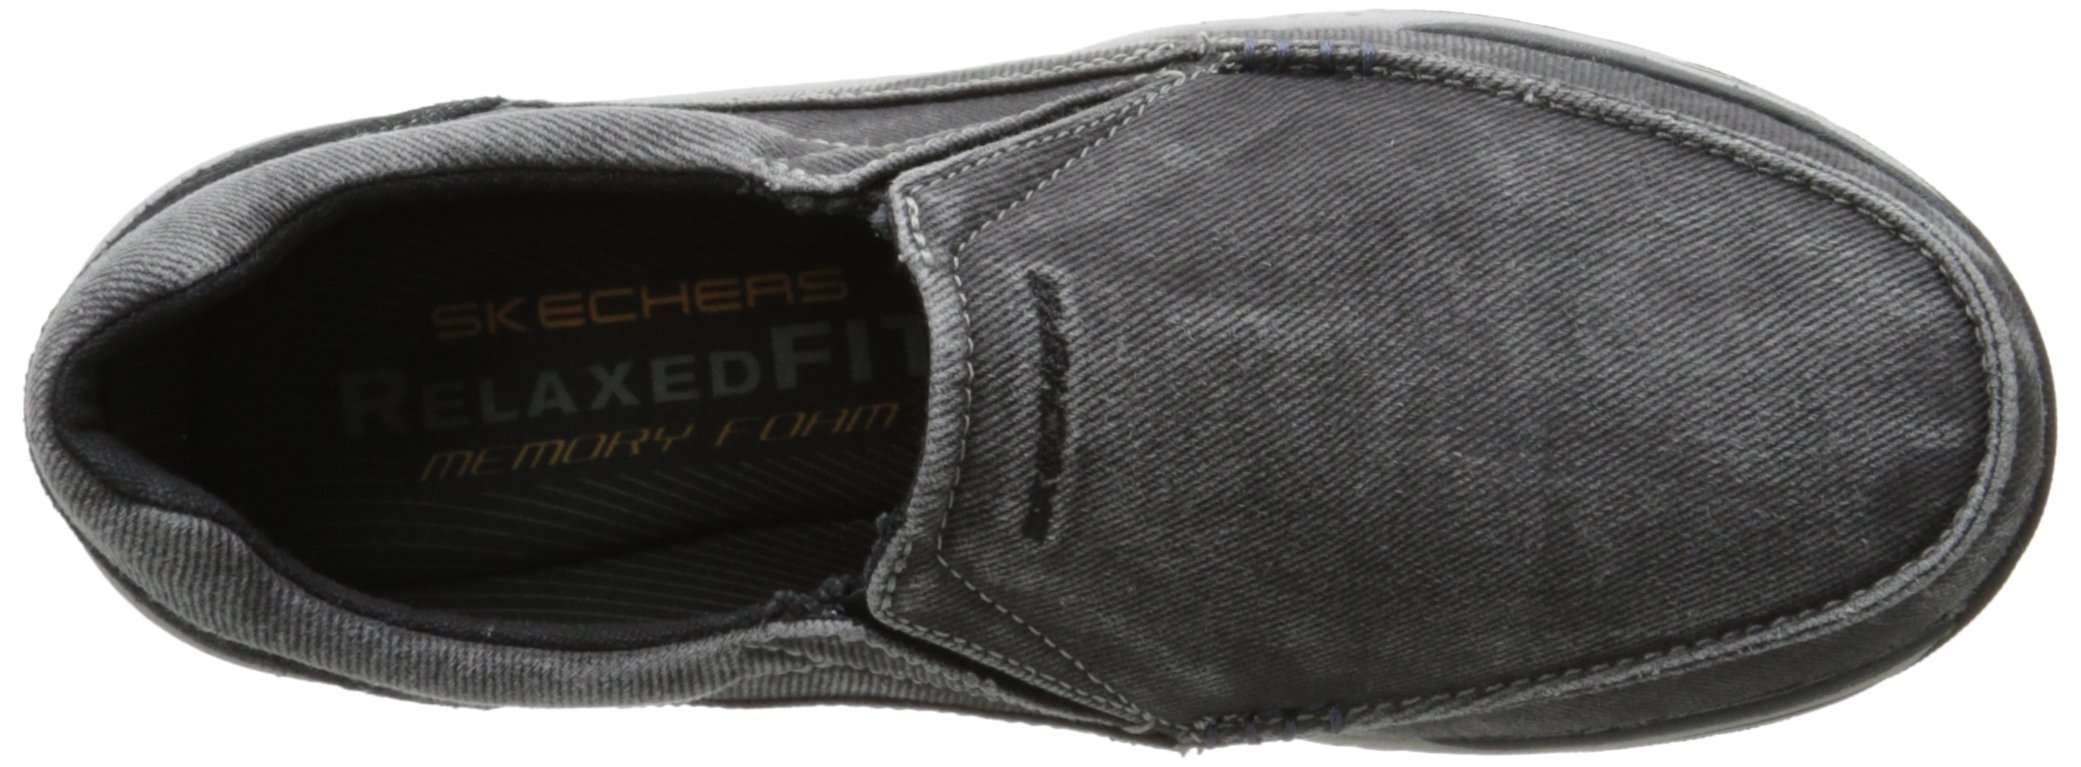 Skechers Men's Expected Avillo Relaxed-Fit Slip-On Loafer